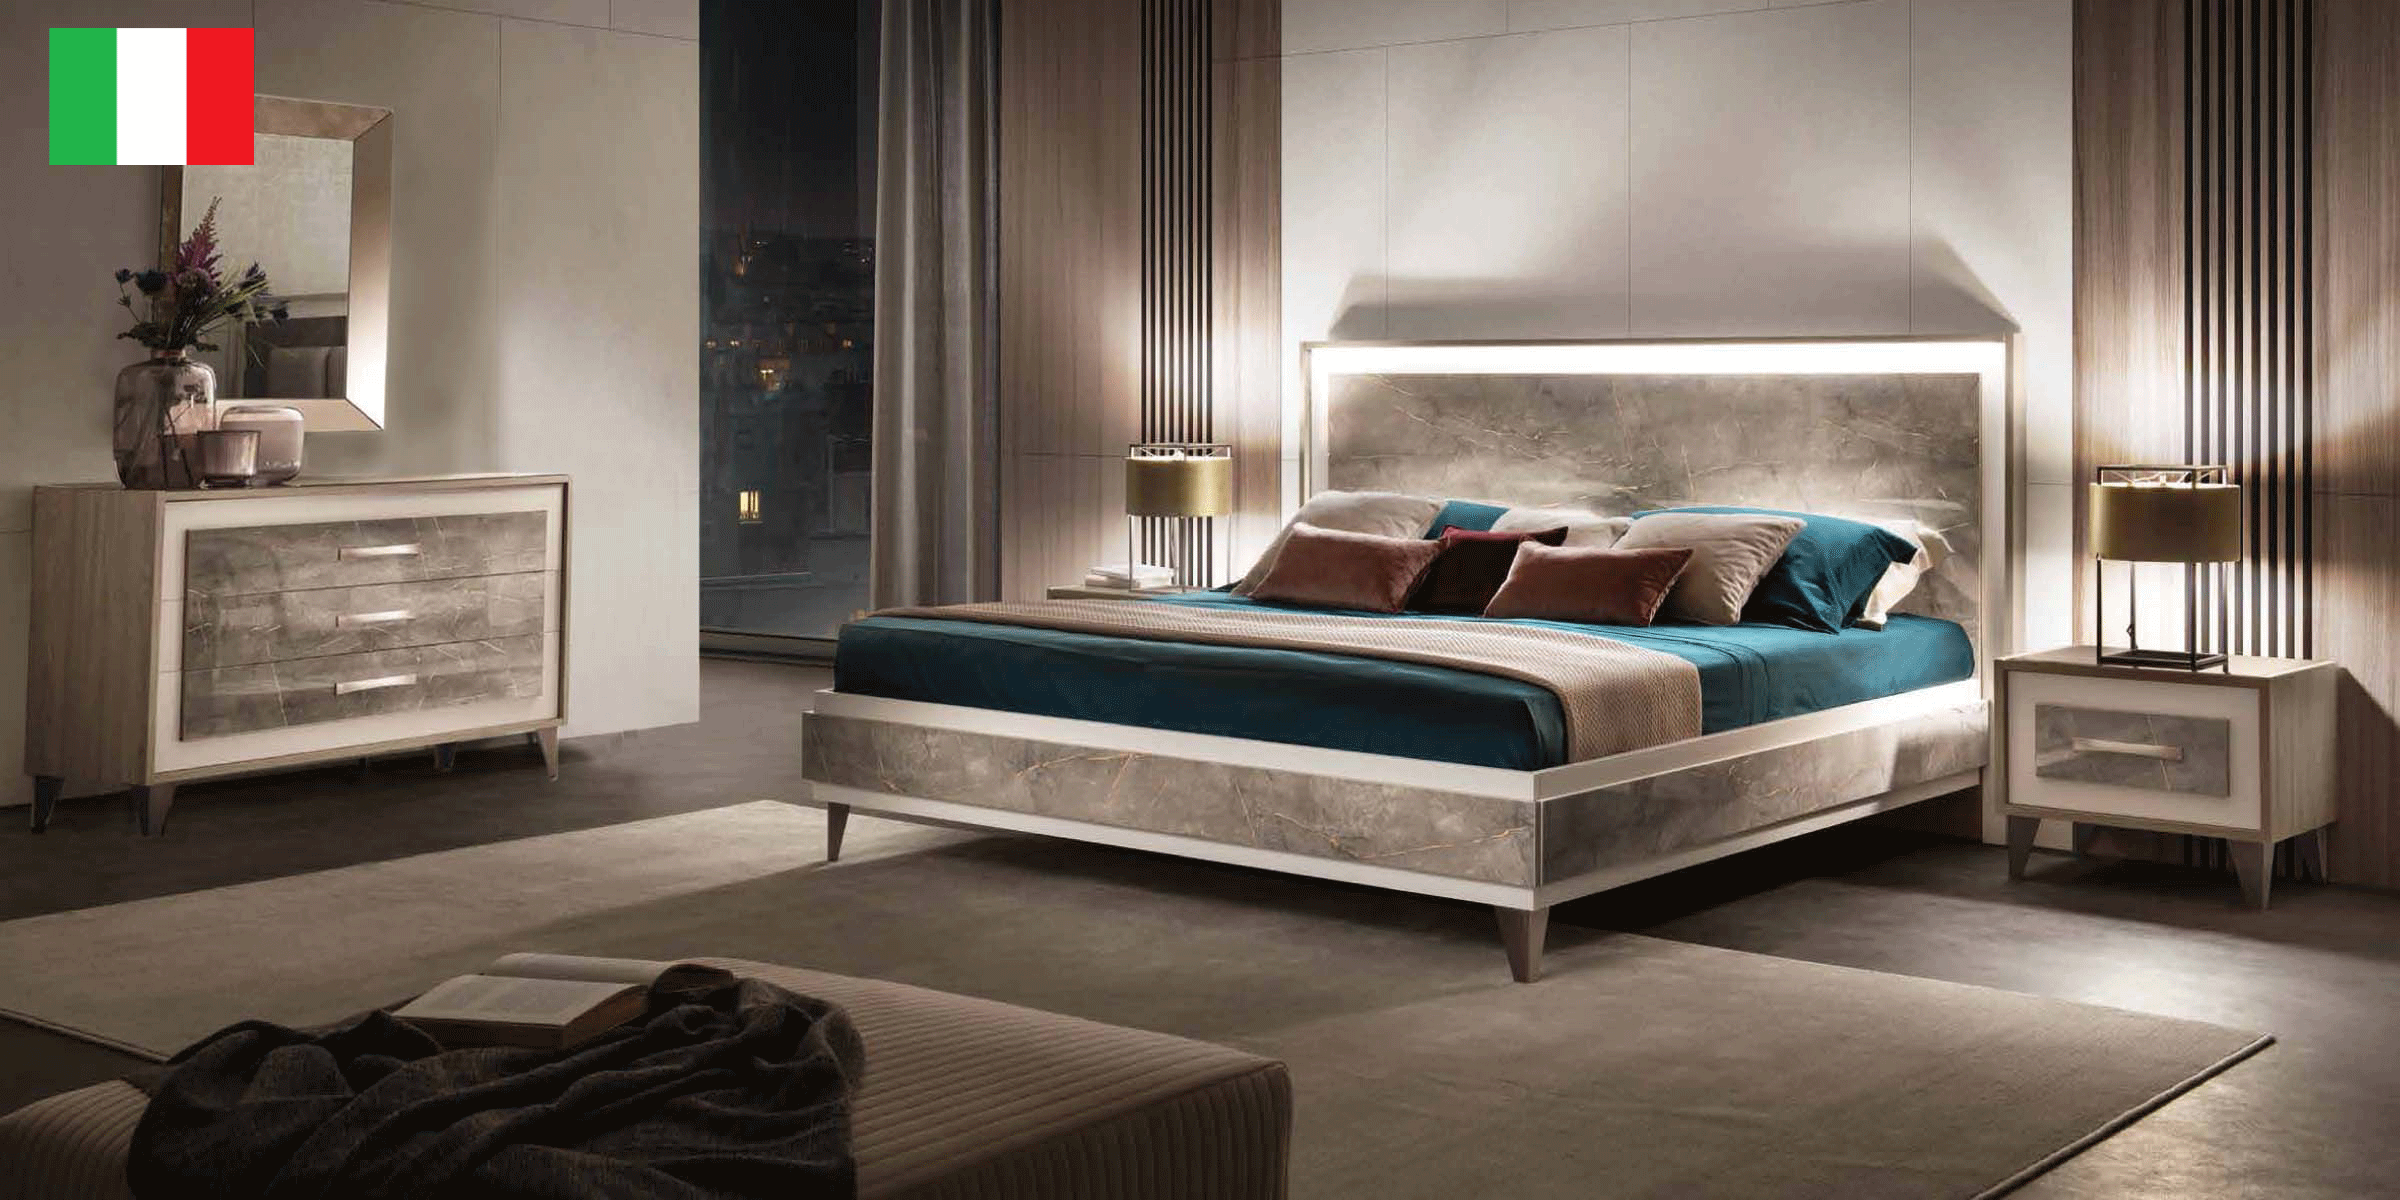 Brands Gamamobel Bedroom Sets, Spain ArredoAmbra Bedroom by Arredoclassic with single dresser